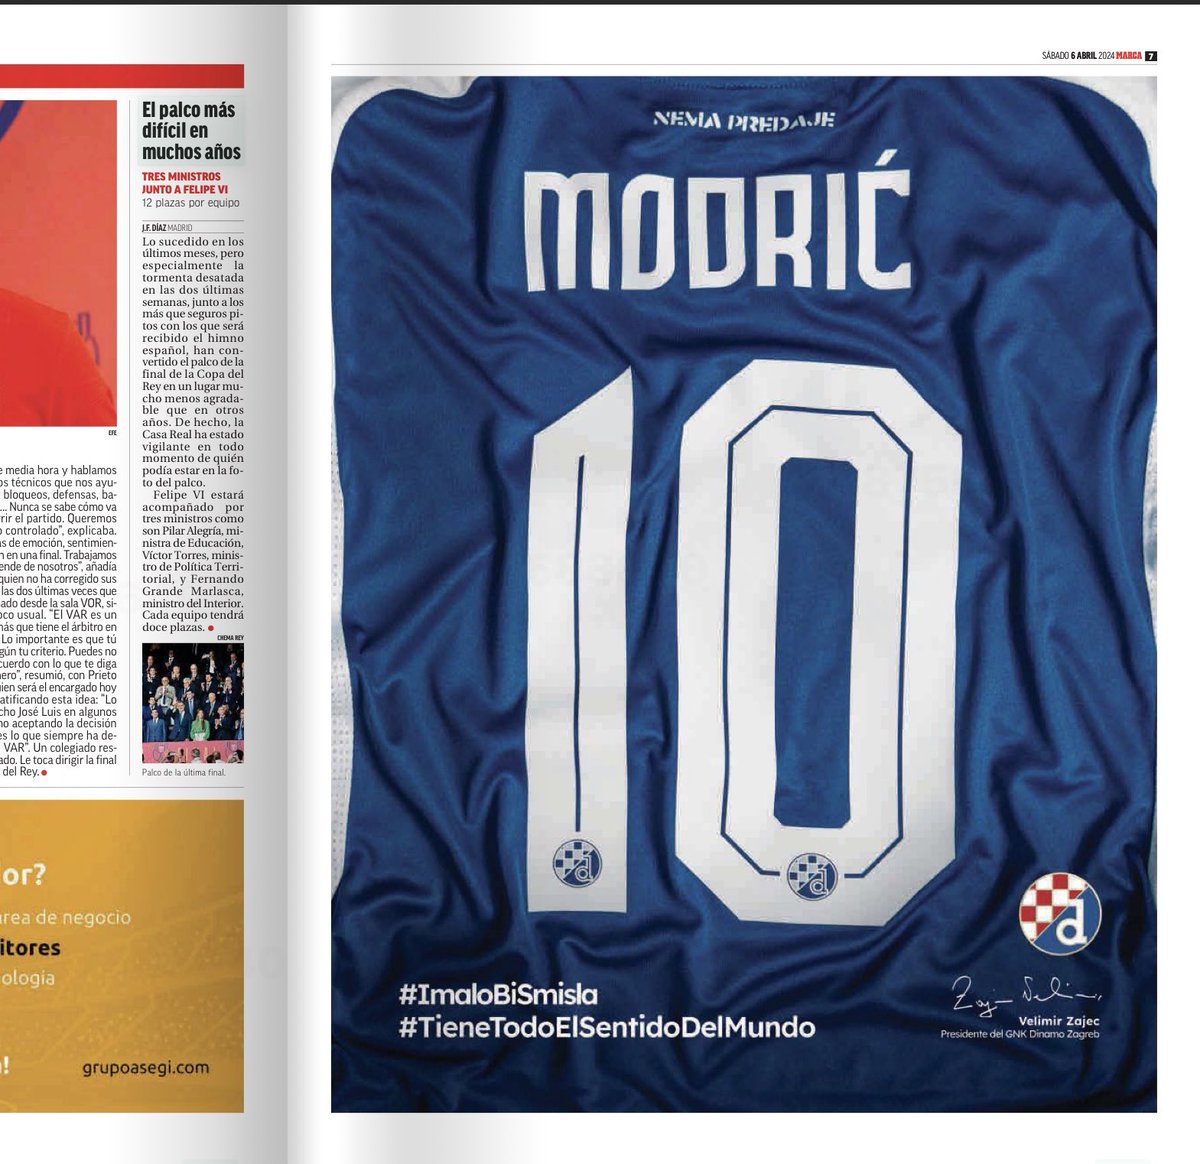 Me parece que el Dinamo de Zagreb ha pagado una página de publicidad en el Marca para convencer a Modric de que acabe su carrera en el club croata Alguien recuerda una iniciativa como esta?